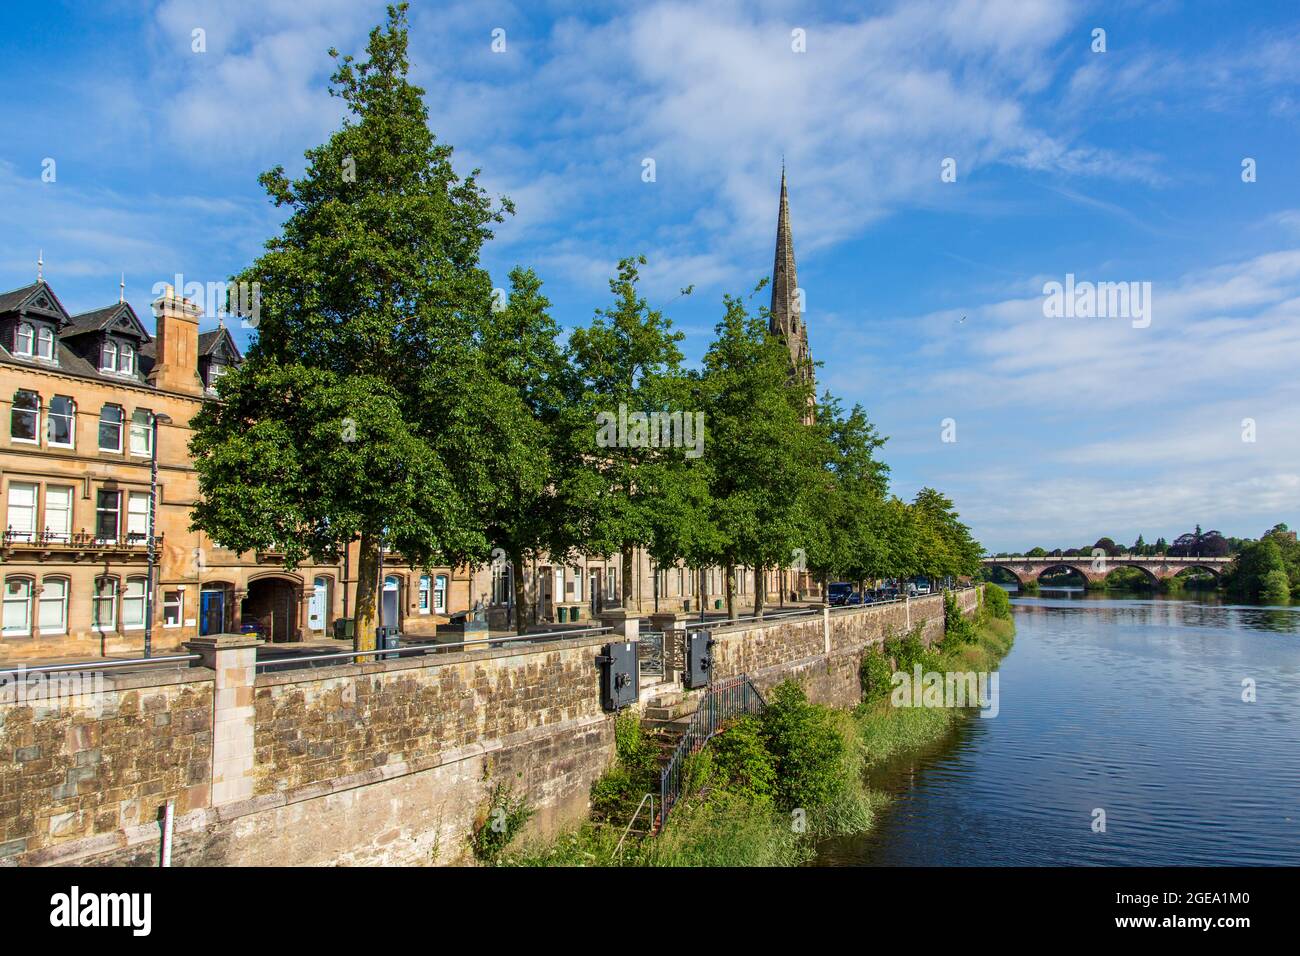 La ciudad de Perth a orillas del río Tay, Escocia, enmarcada por la ribera de los Alders italianos Foto de stock